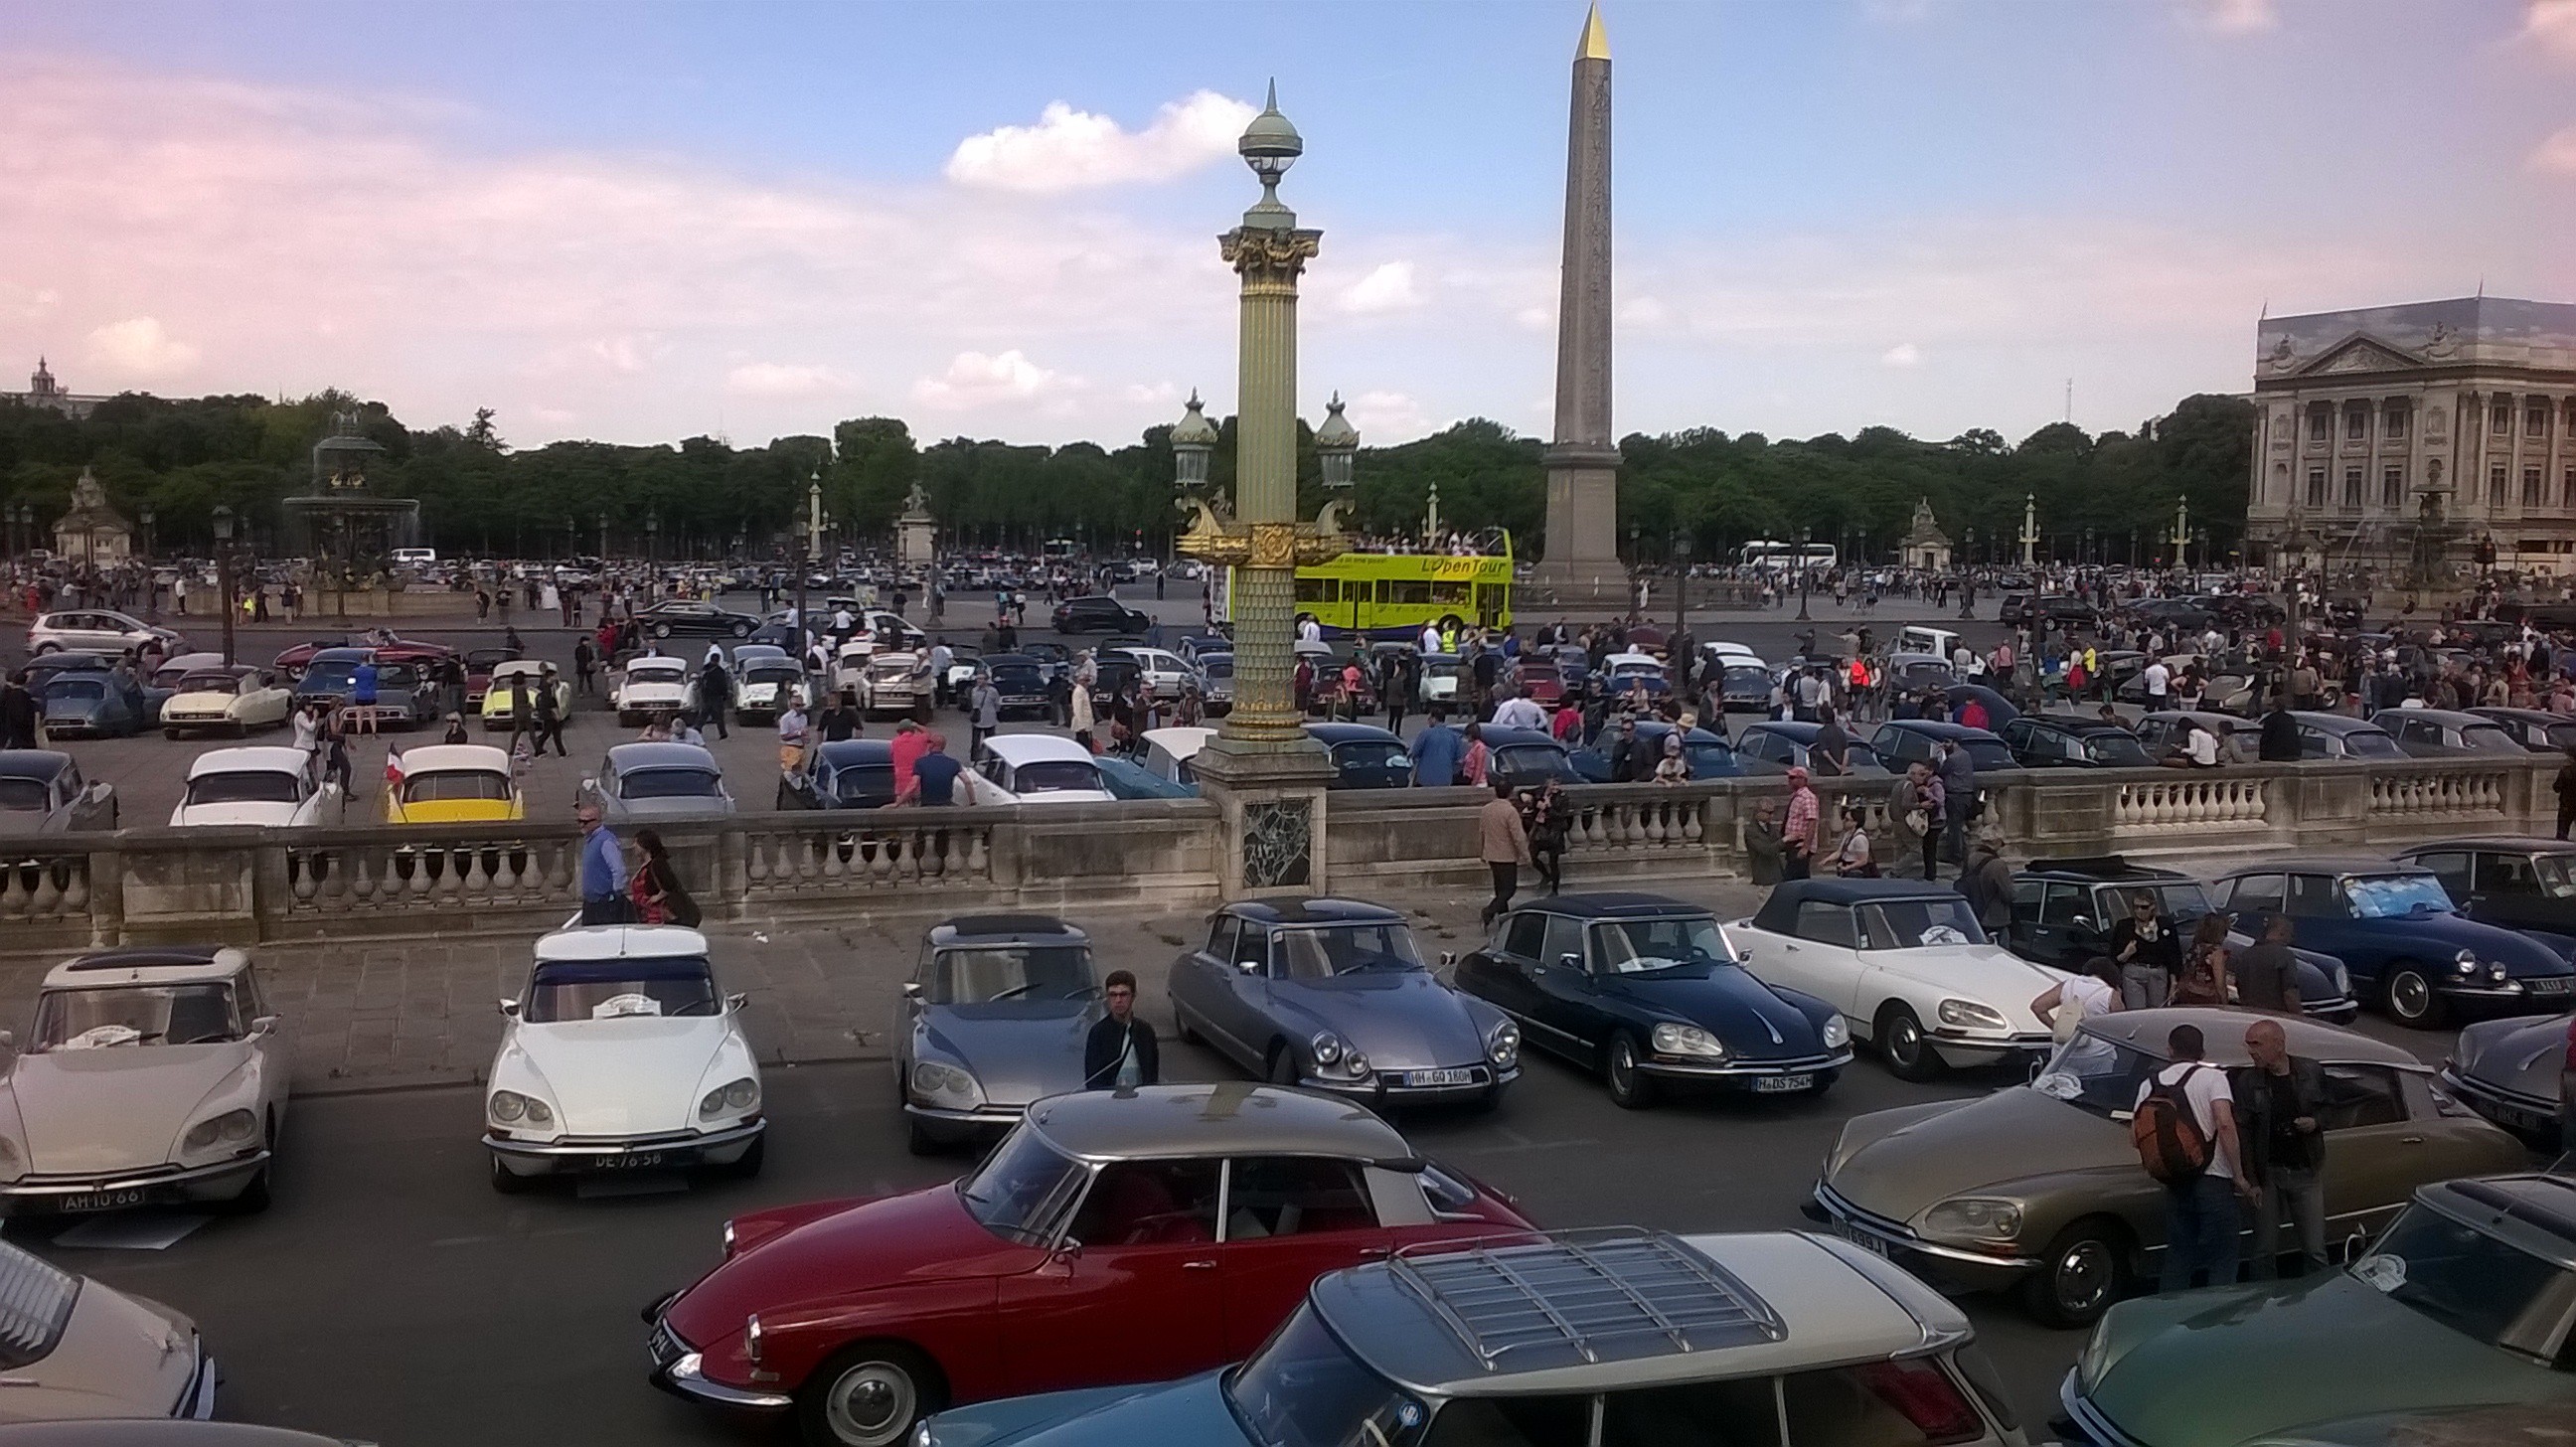 25 mai 2015 Place de la Concorde